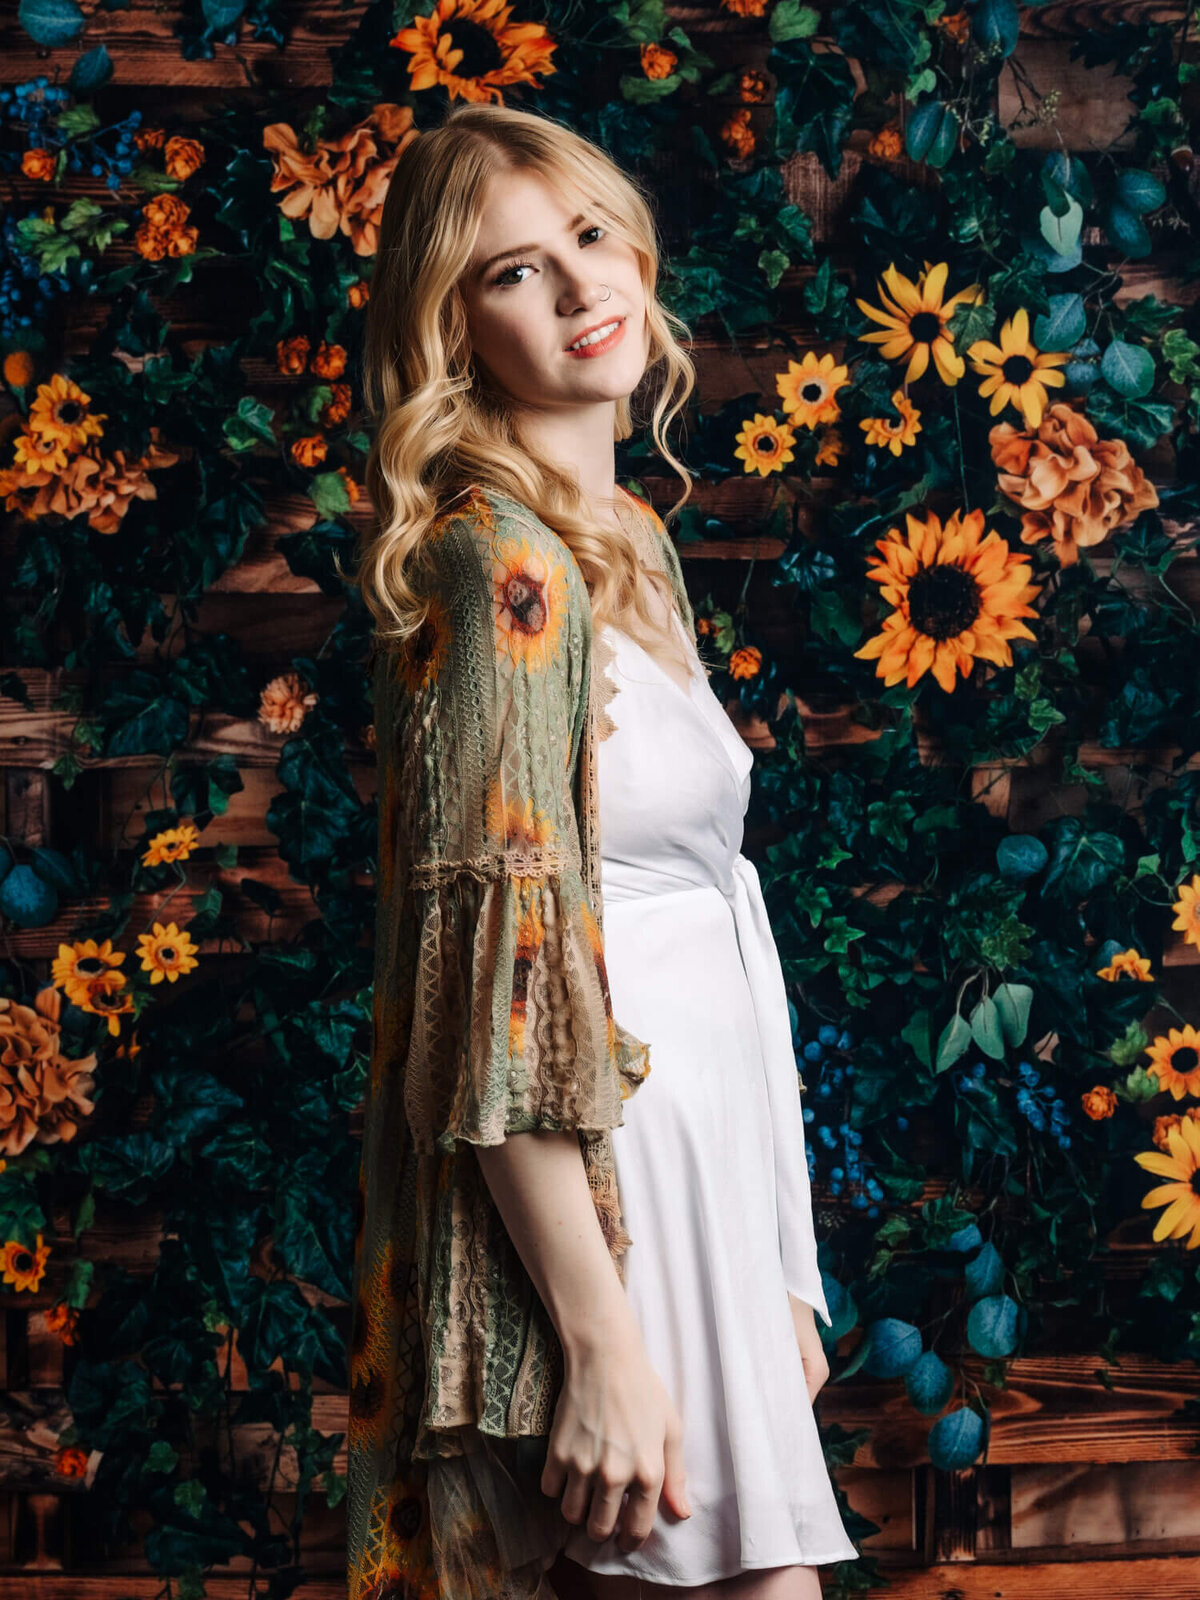 Girl poses in front of sunflowers for Prescott senior photographer Melissa Byrne